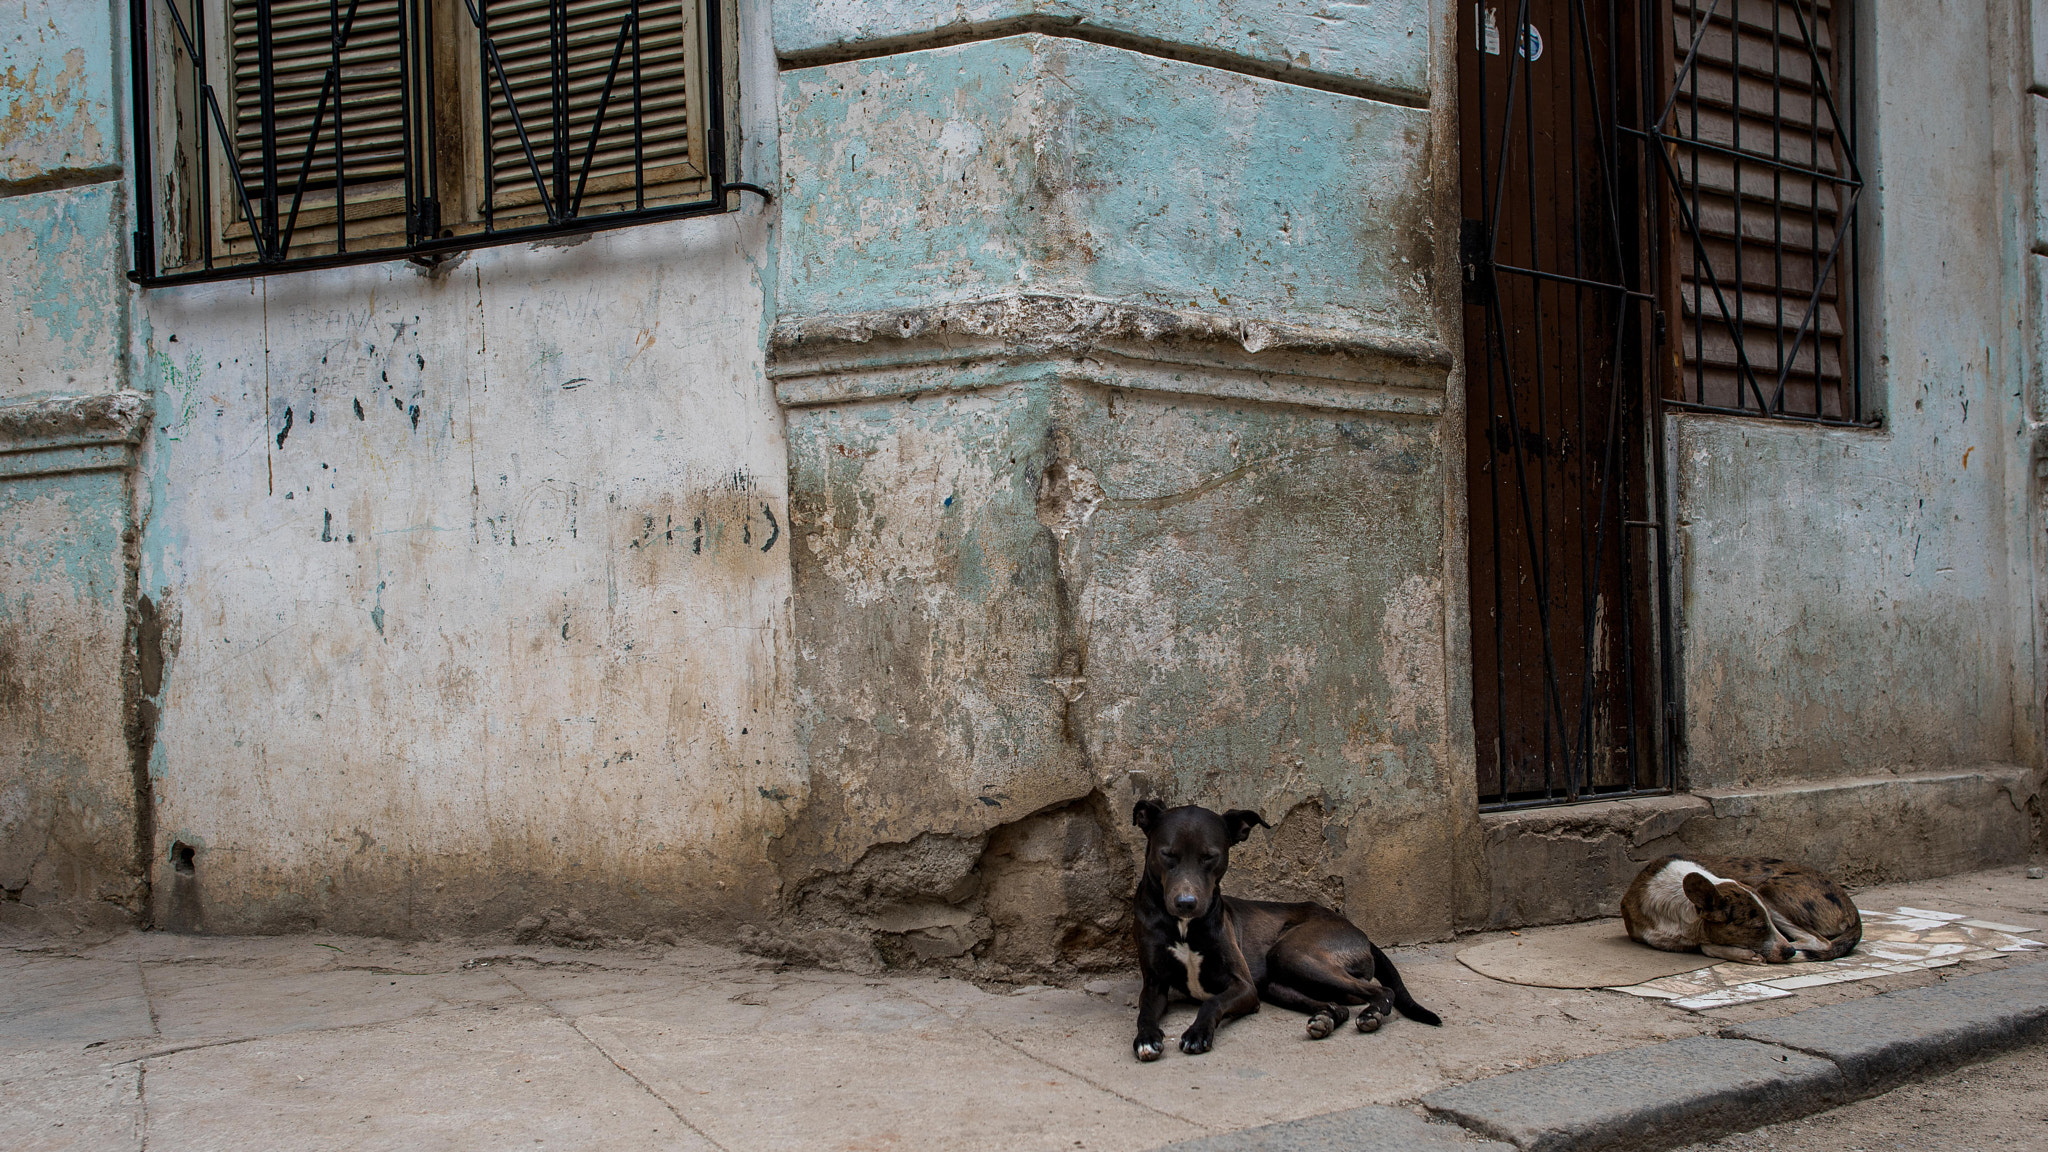 Nikon D810 + Nikon AF-S Nikkor 24mm F1.4G ED sample photo. Havana hounds on the corner photography